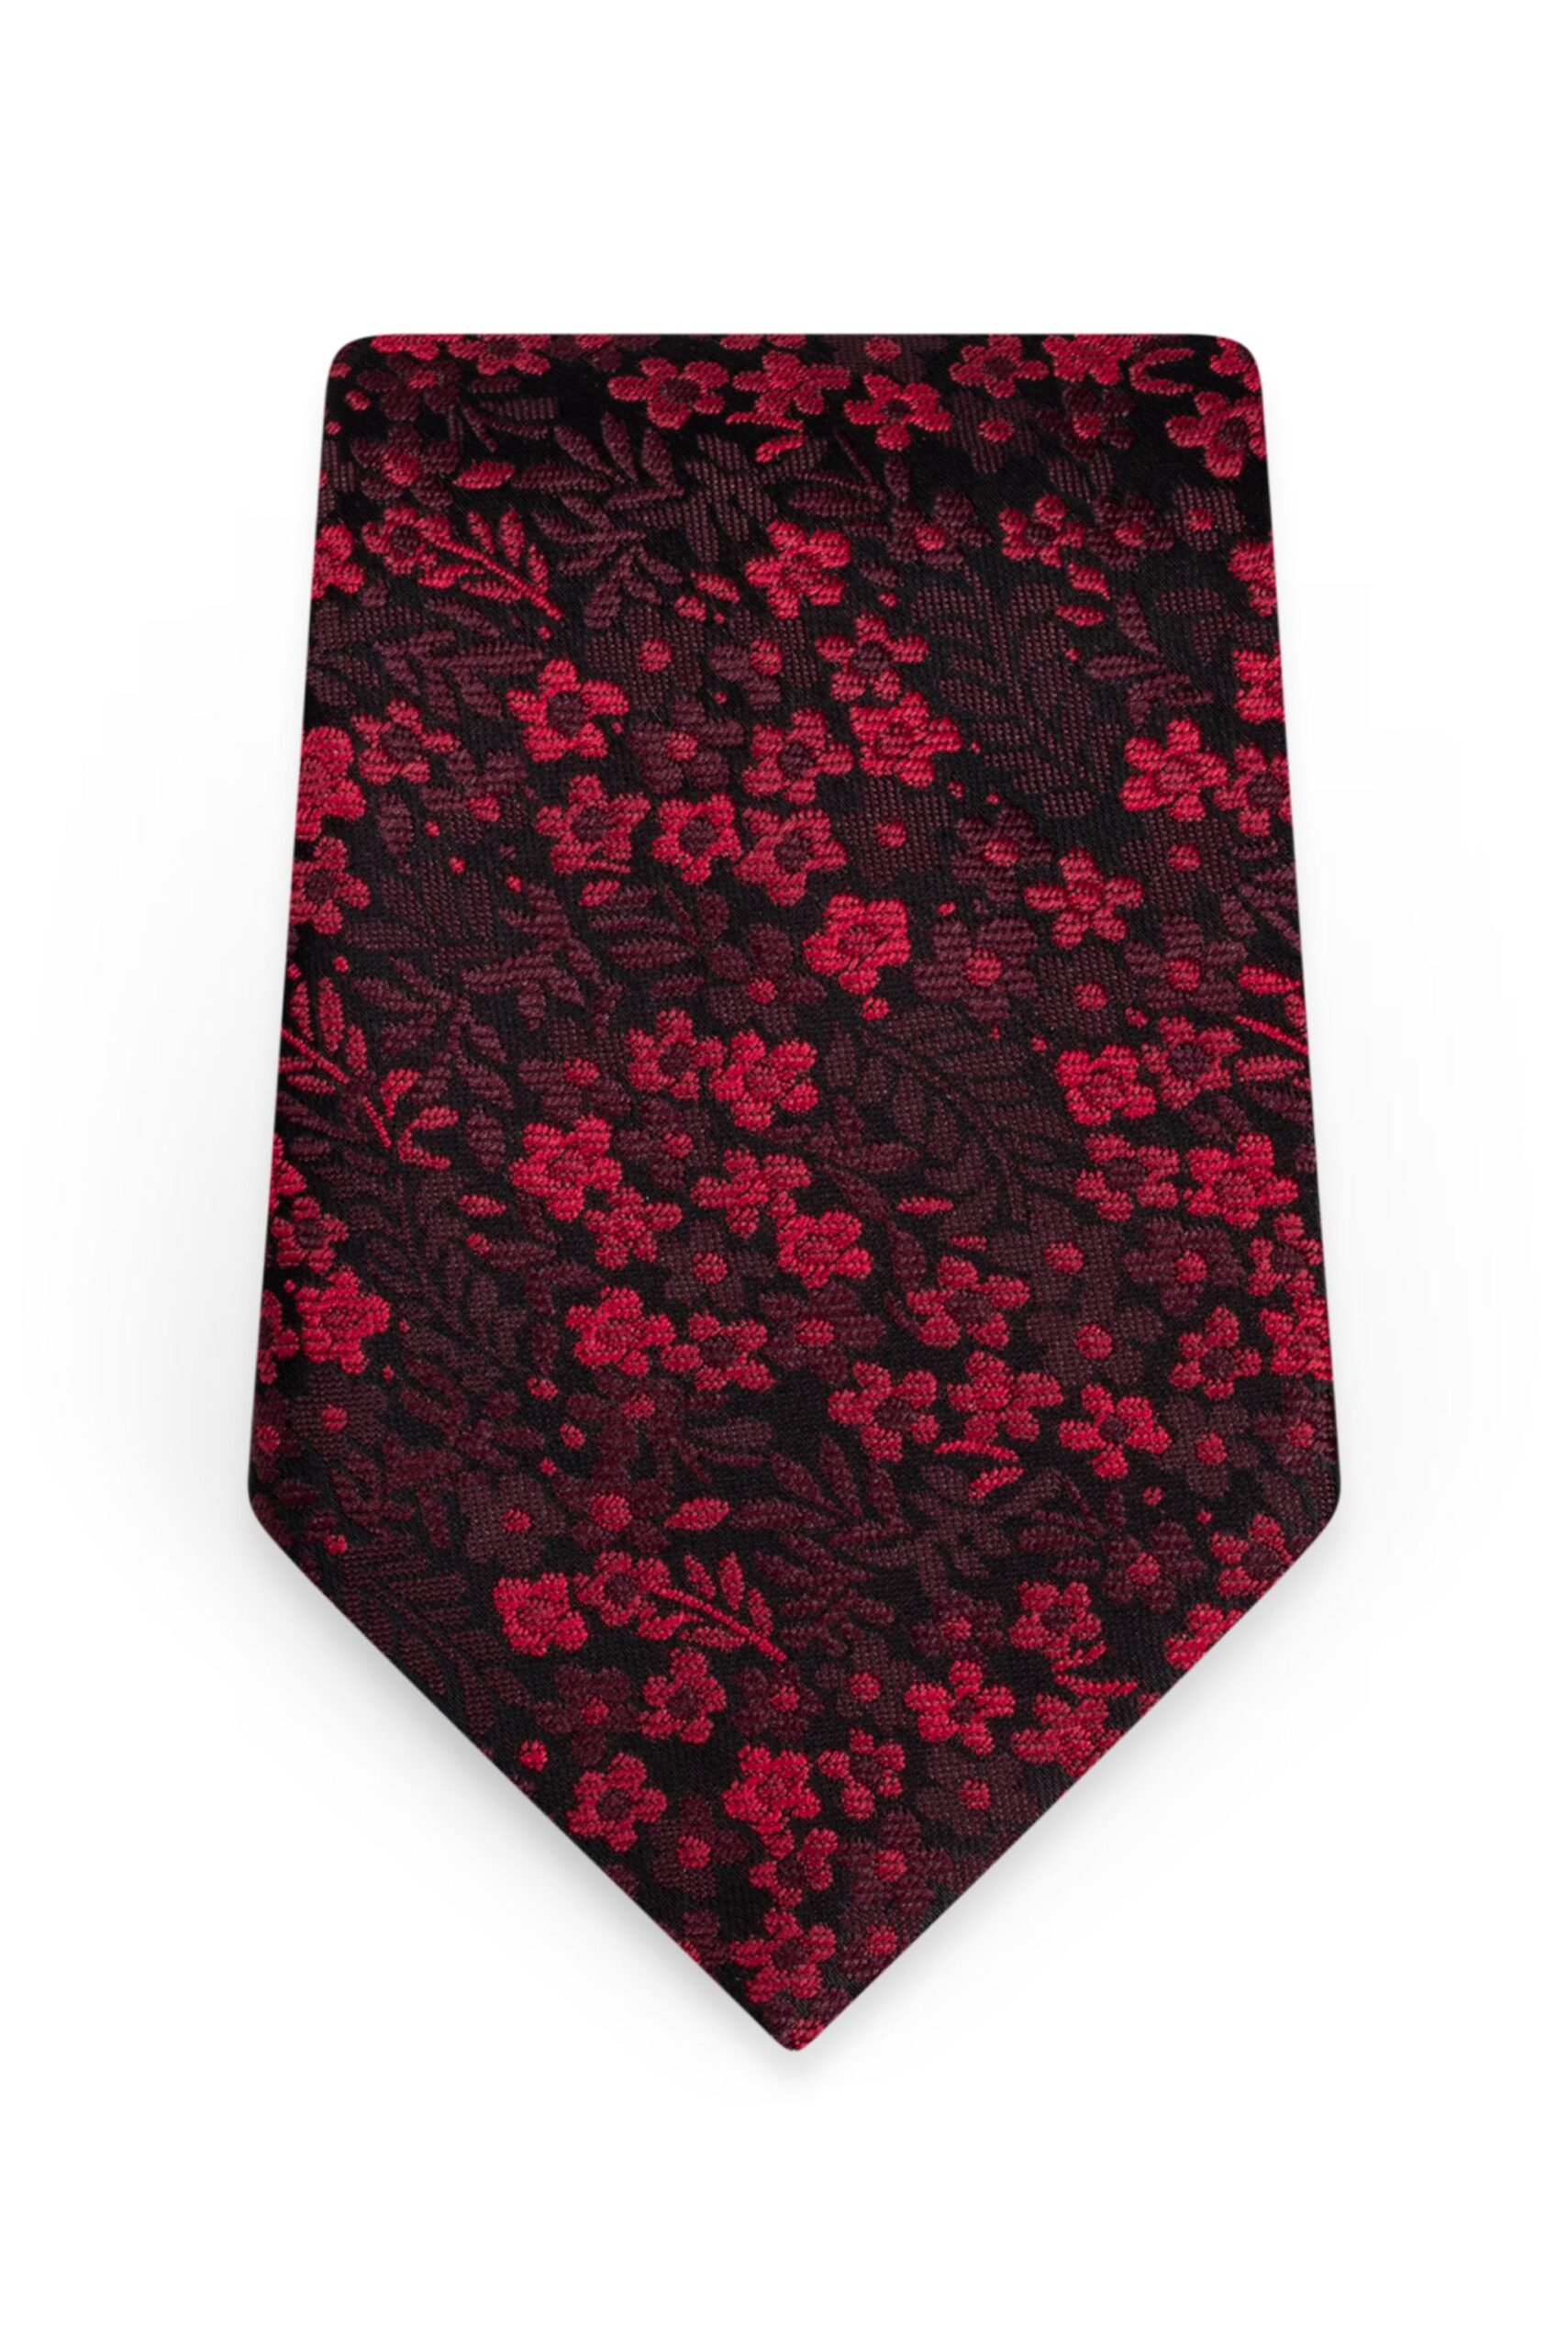 Floral Apple Red Self-Tie Windsor Tie 1